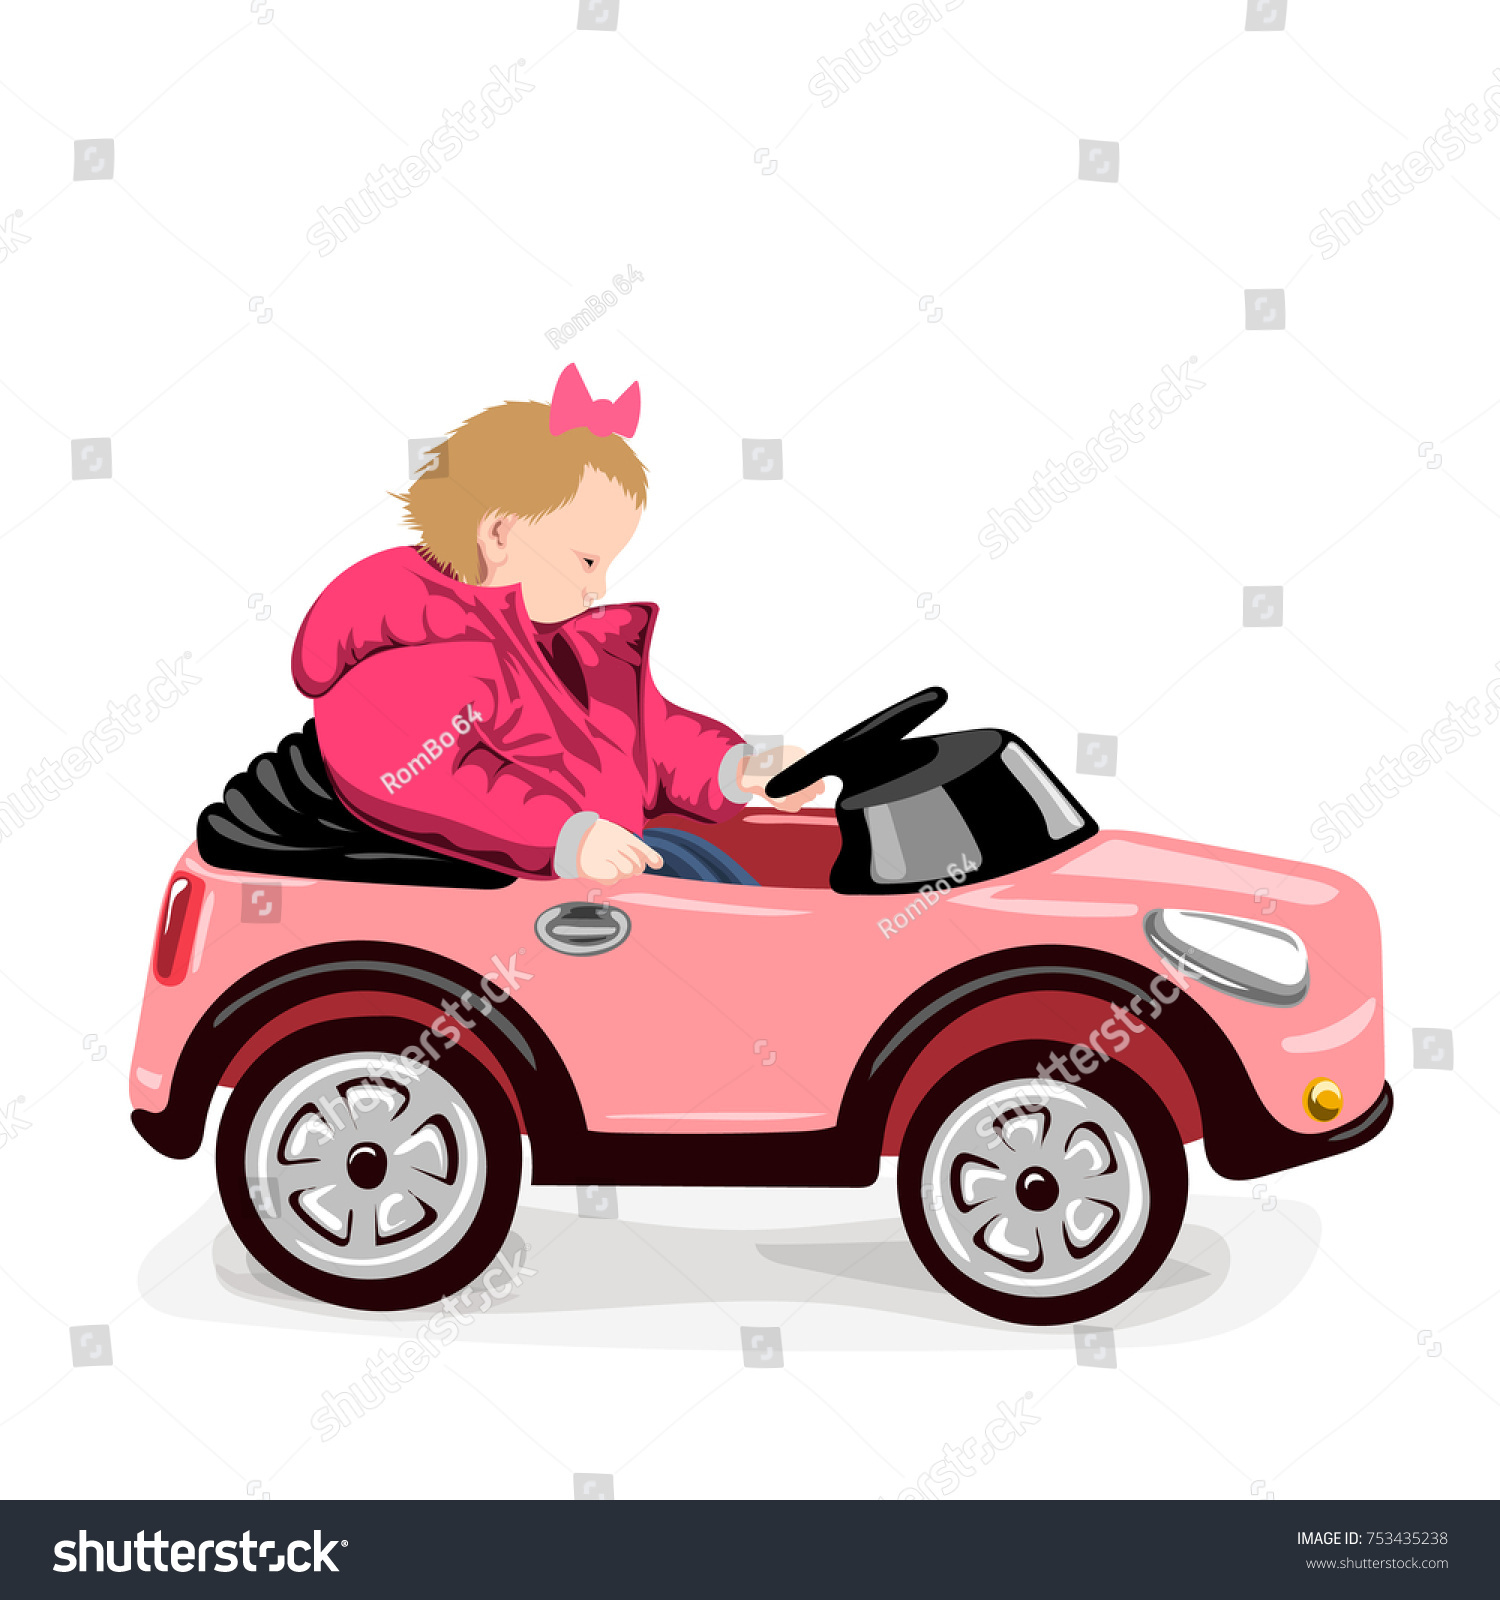 toy car sitting